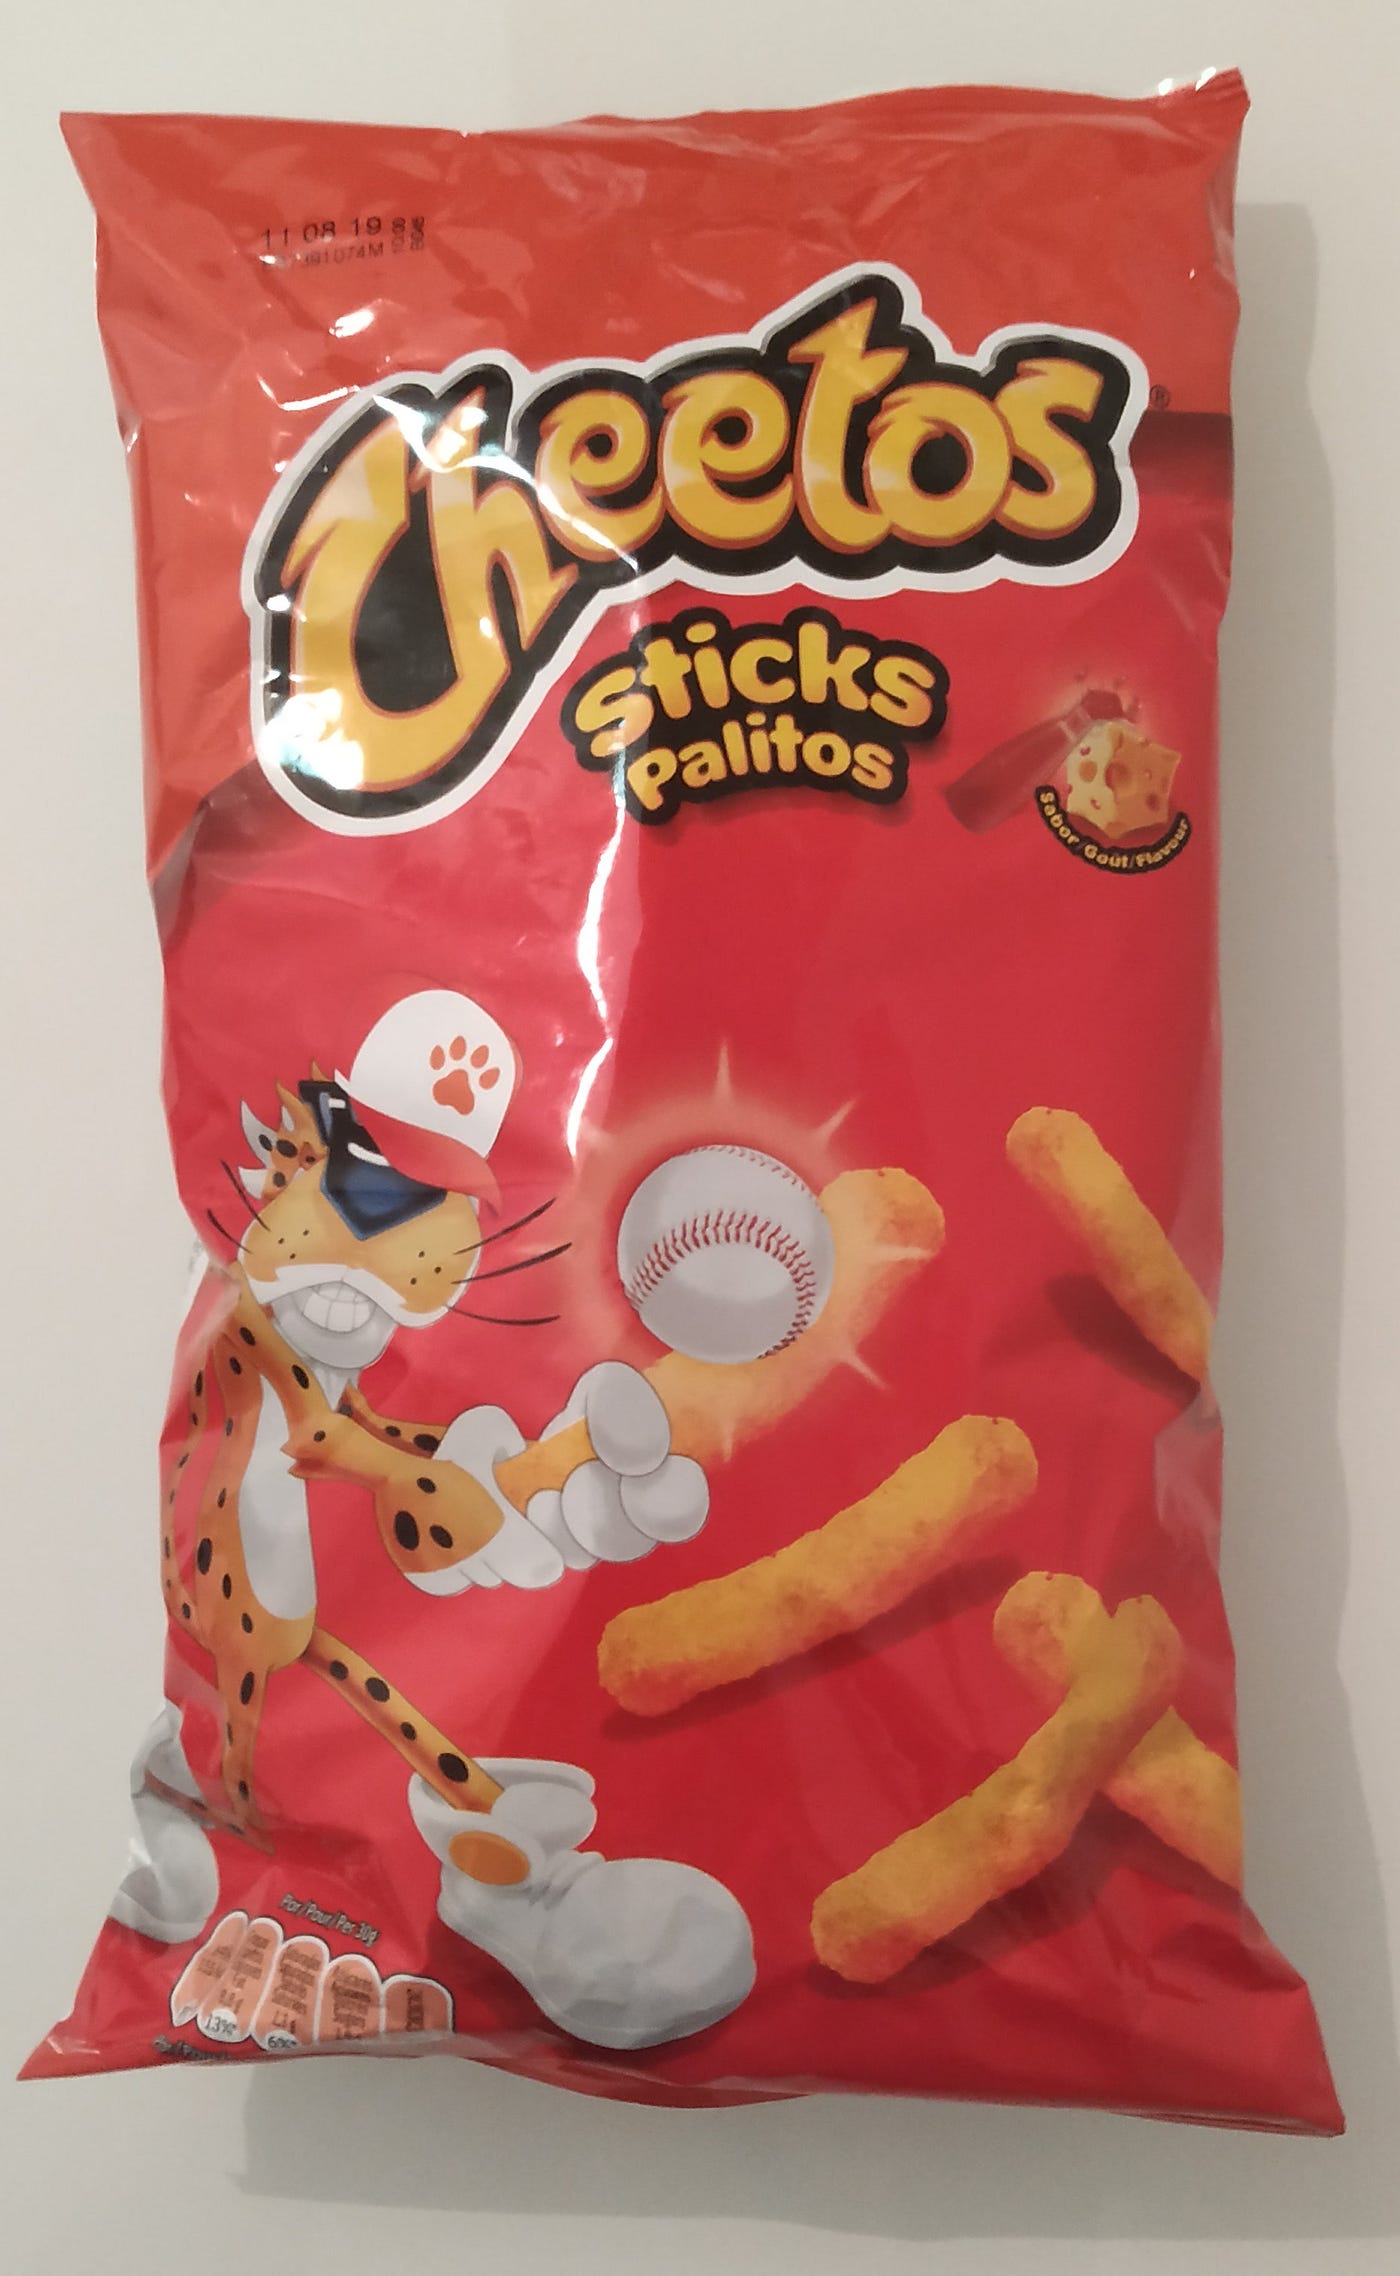 Crítica: Cheetos Sticks. A continuación se expondrá una crítica… | by  Marcos Blaya Miralles | Medium